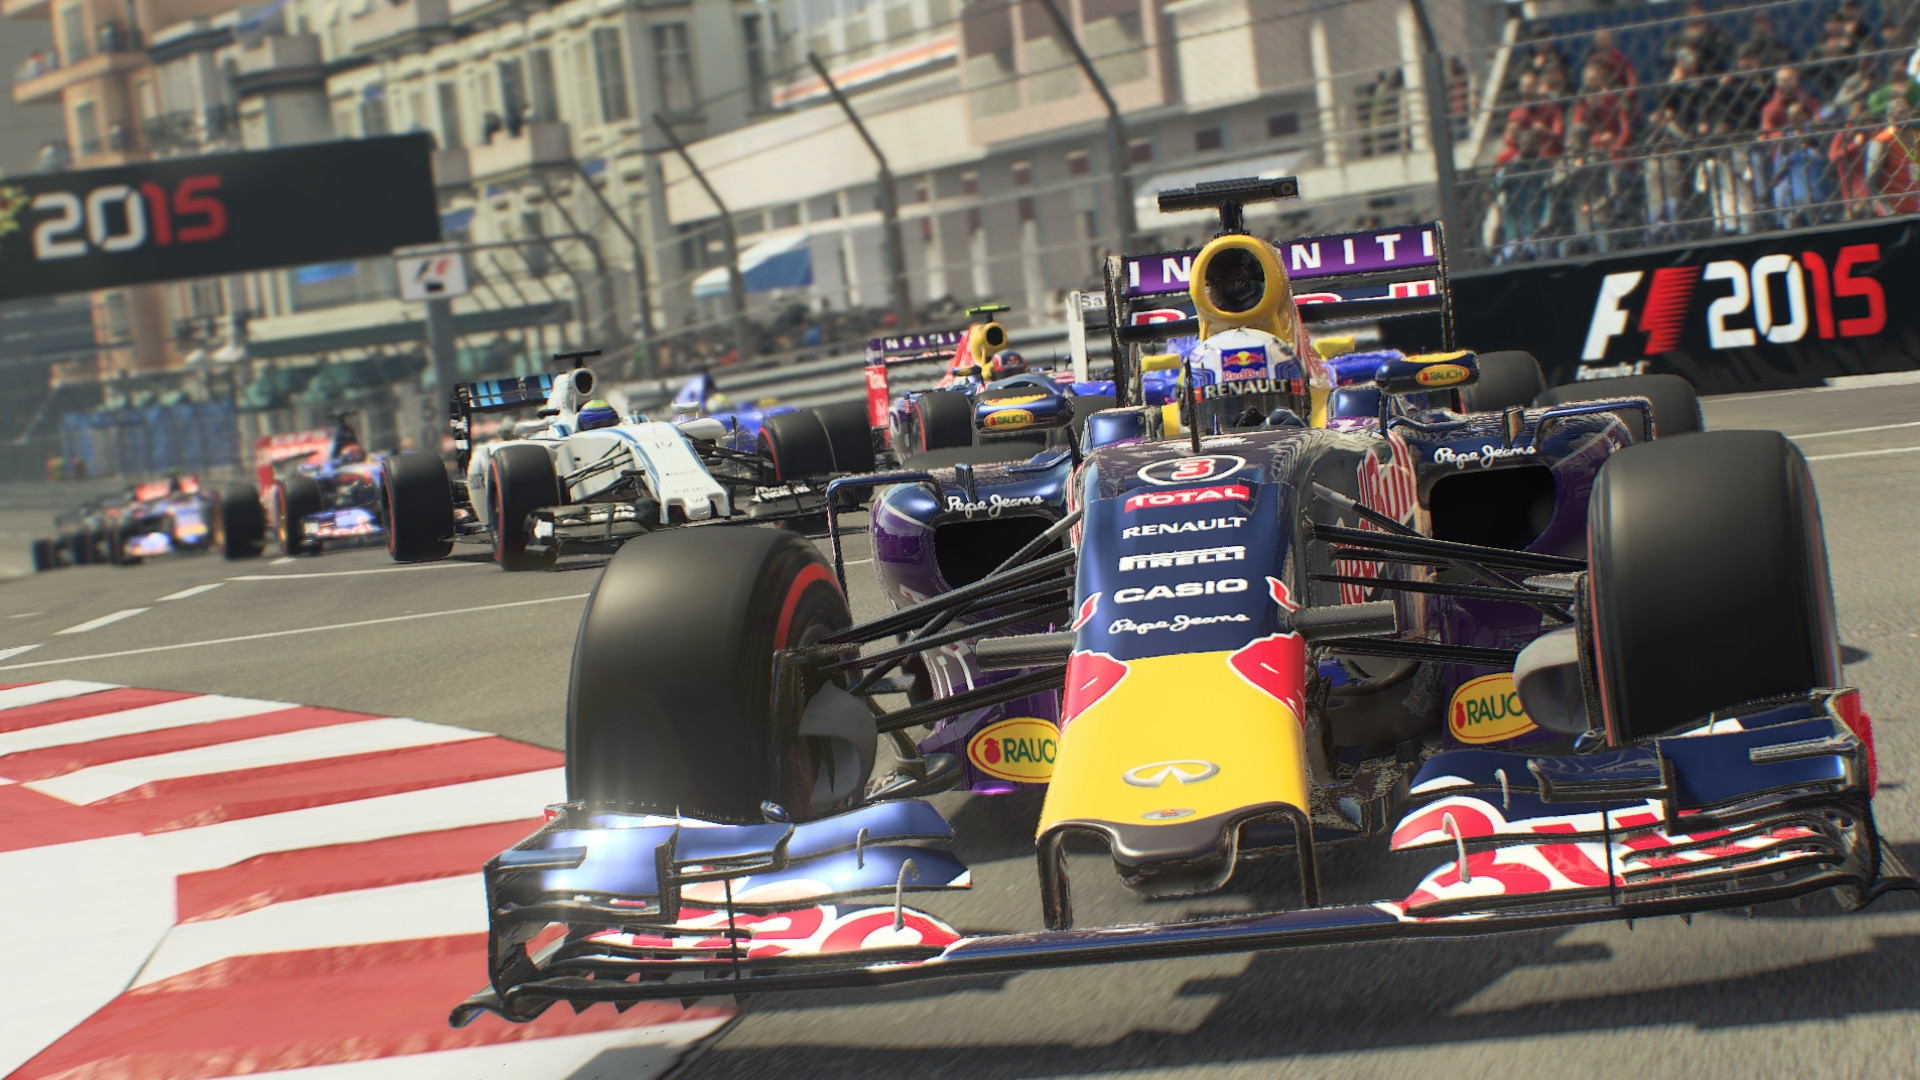 F1 2015 on Steam